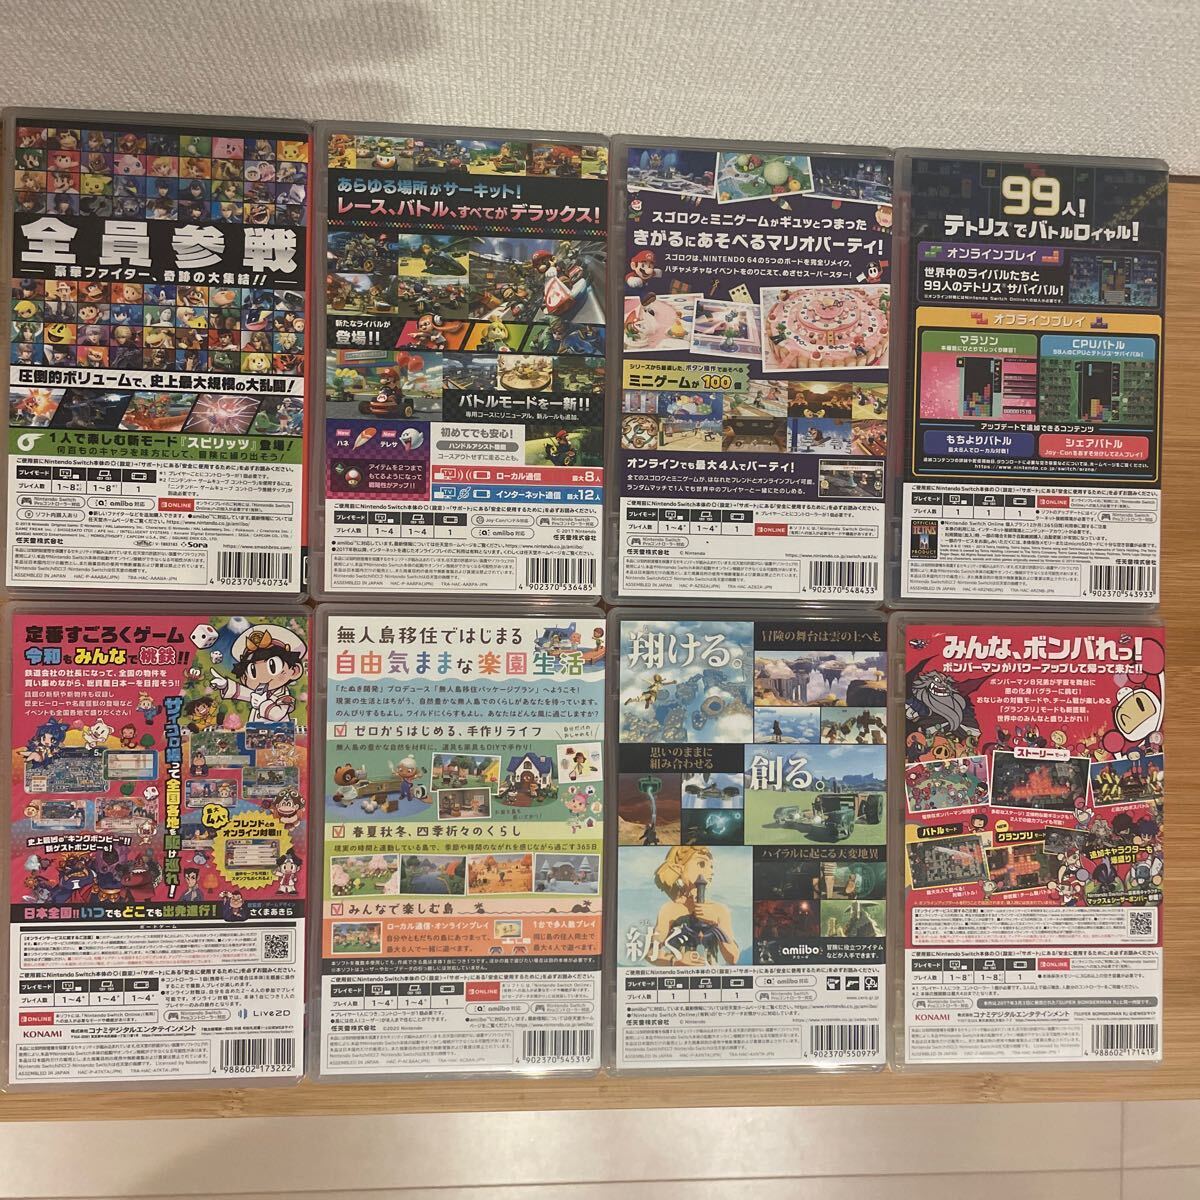 [ б/у ]Nintendo Switch soft продажа комплектом популярный название рабочее состояние подтверждено персик Taro электро- металлический Gather! Animal Crossing Mario Cart Zelda и т.п. 8шт.